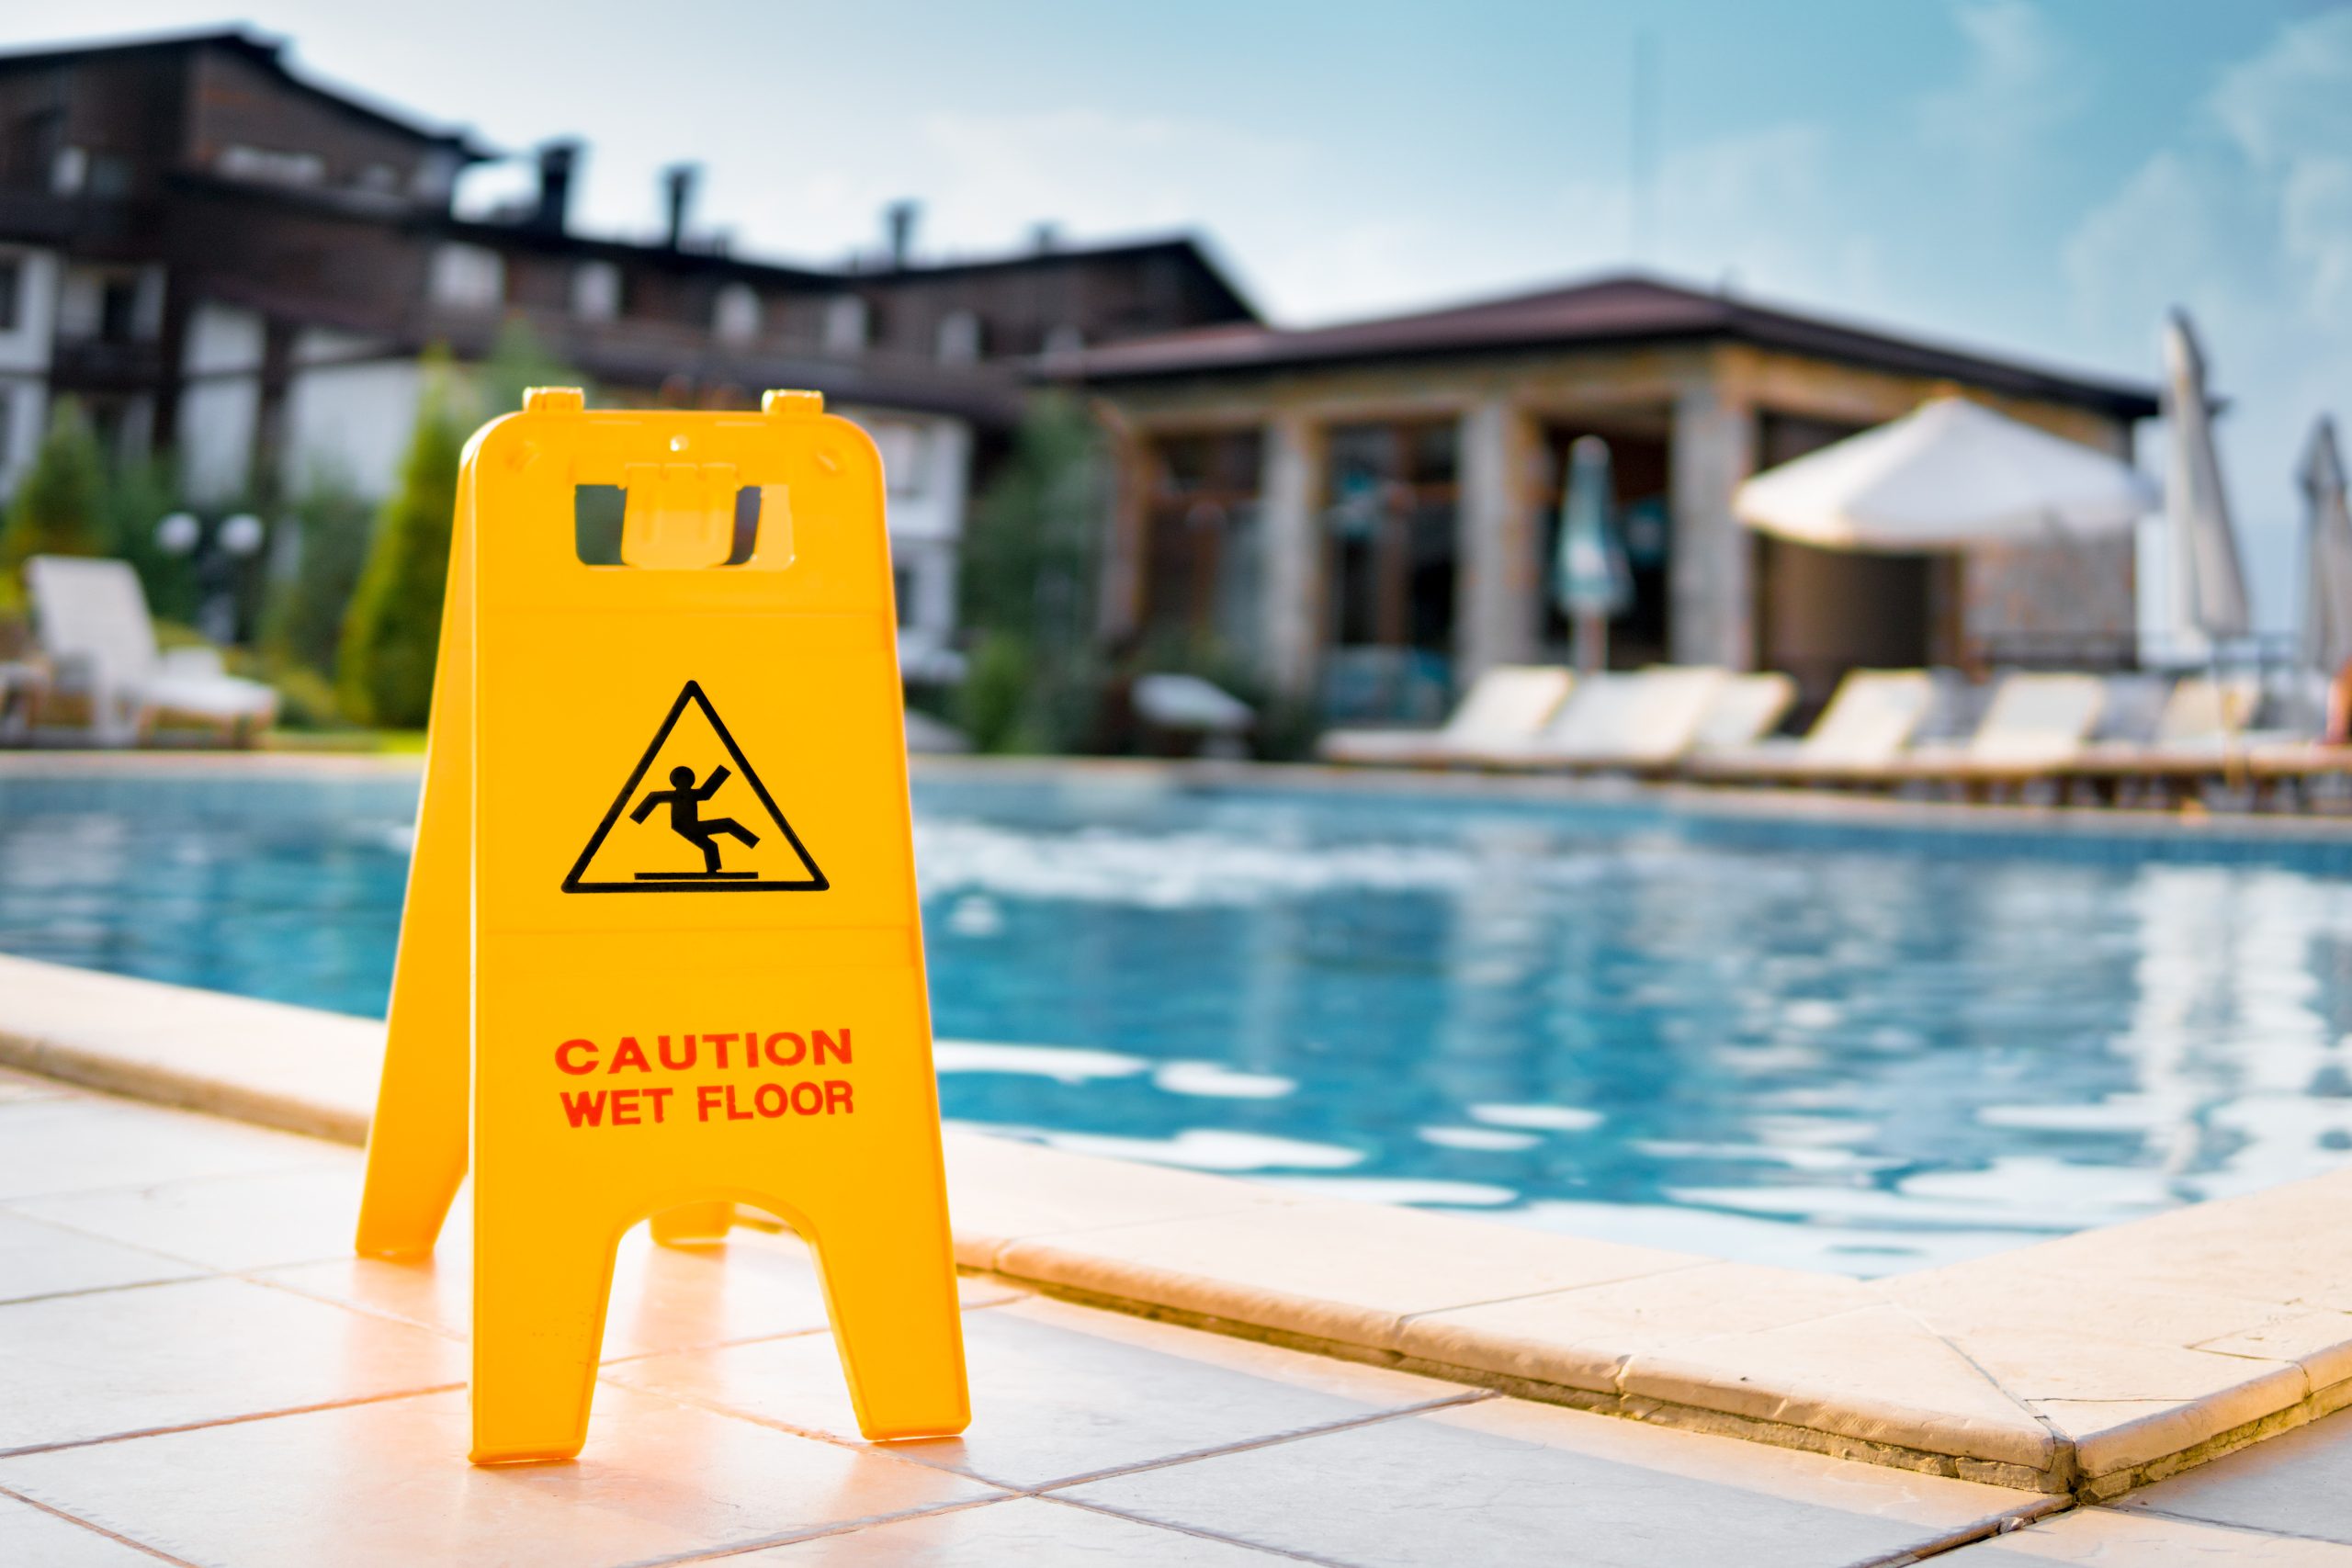 Wet floor sign next to pool